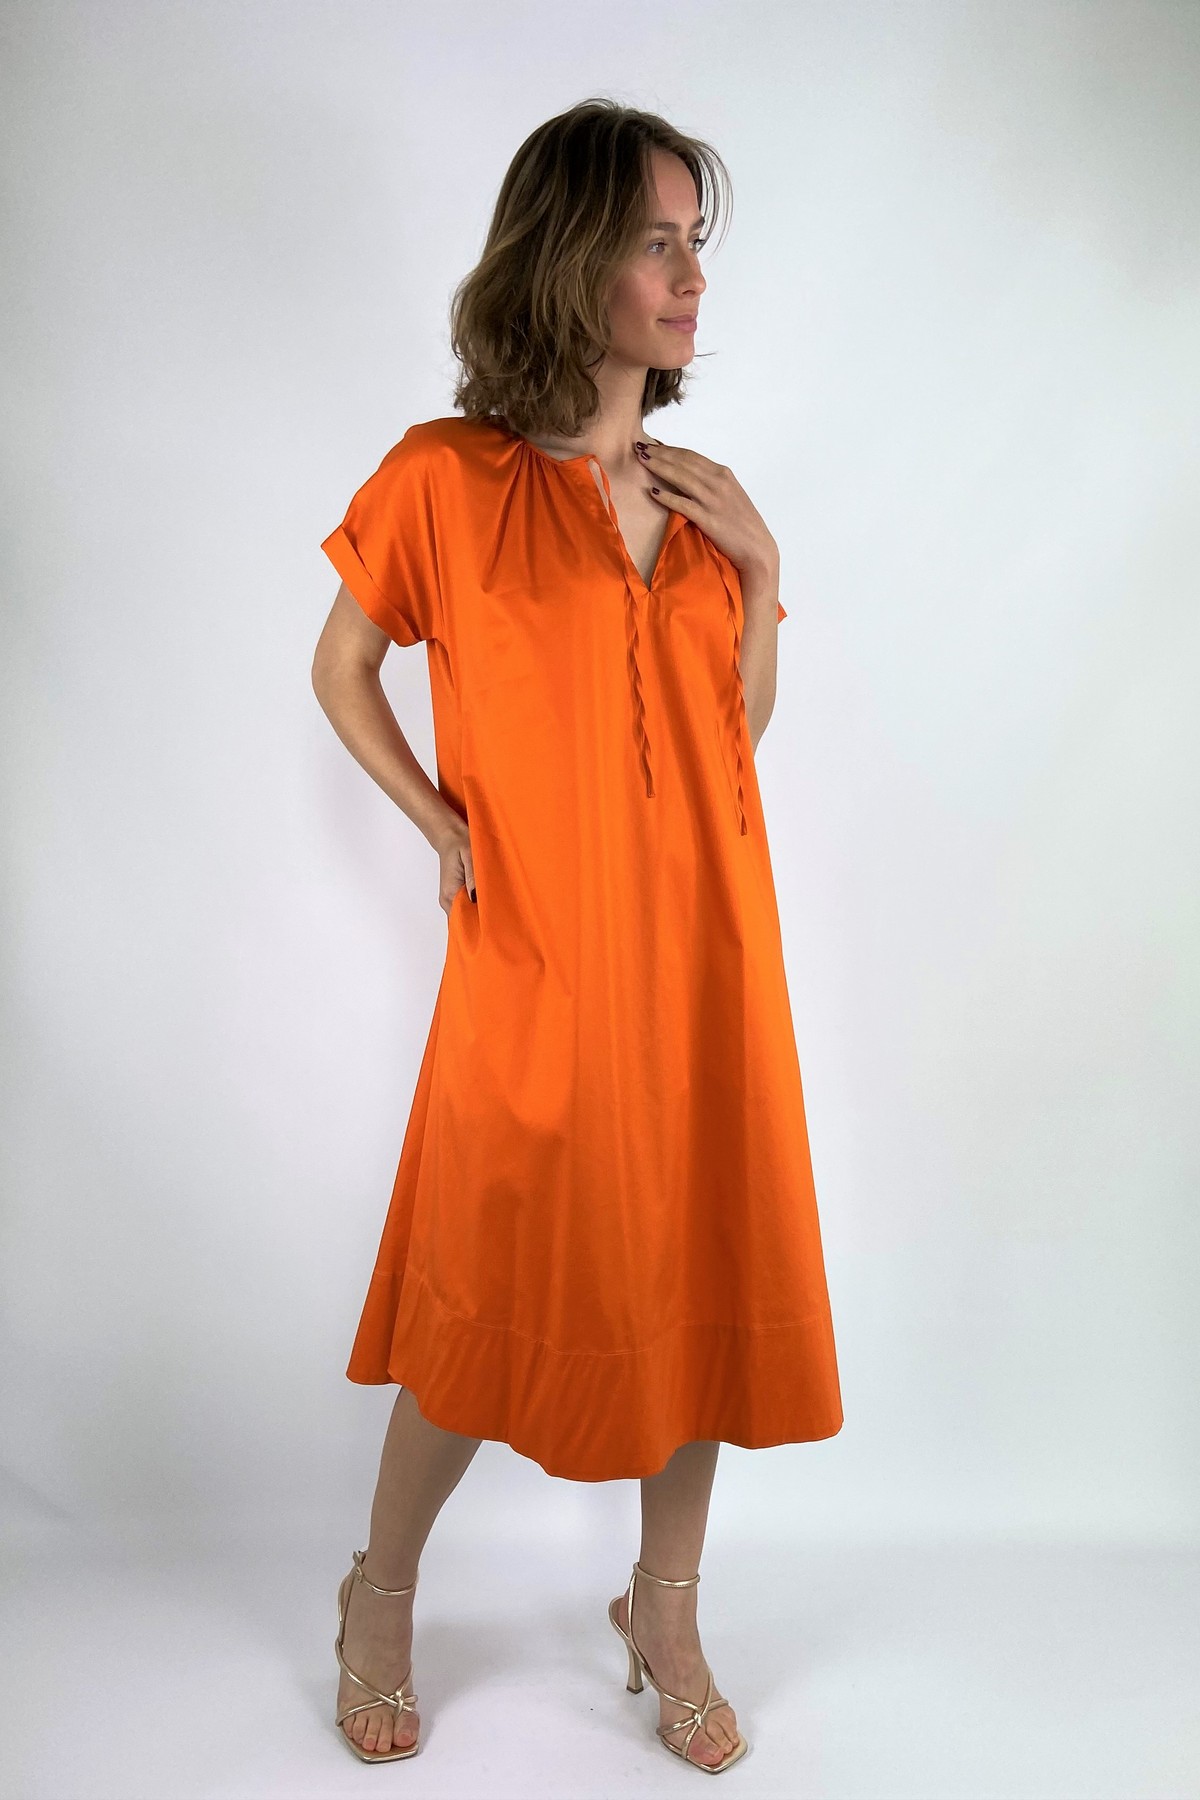 Kleed katoen V lintjes in de kleur oranje van het merk FFC